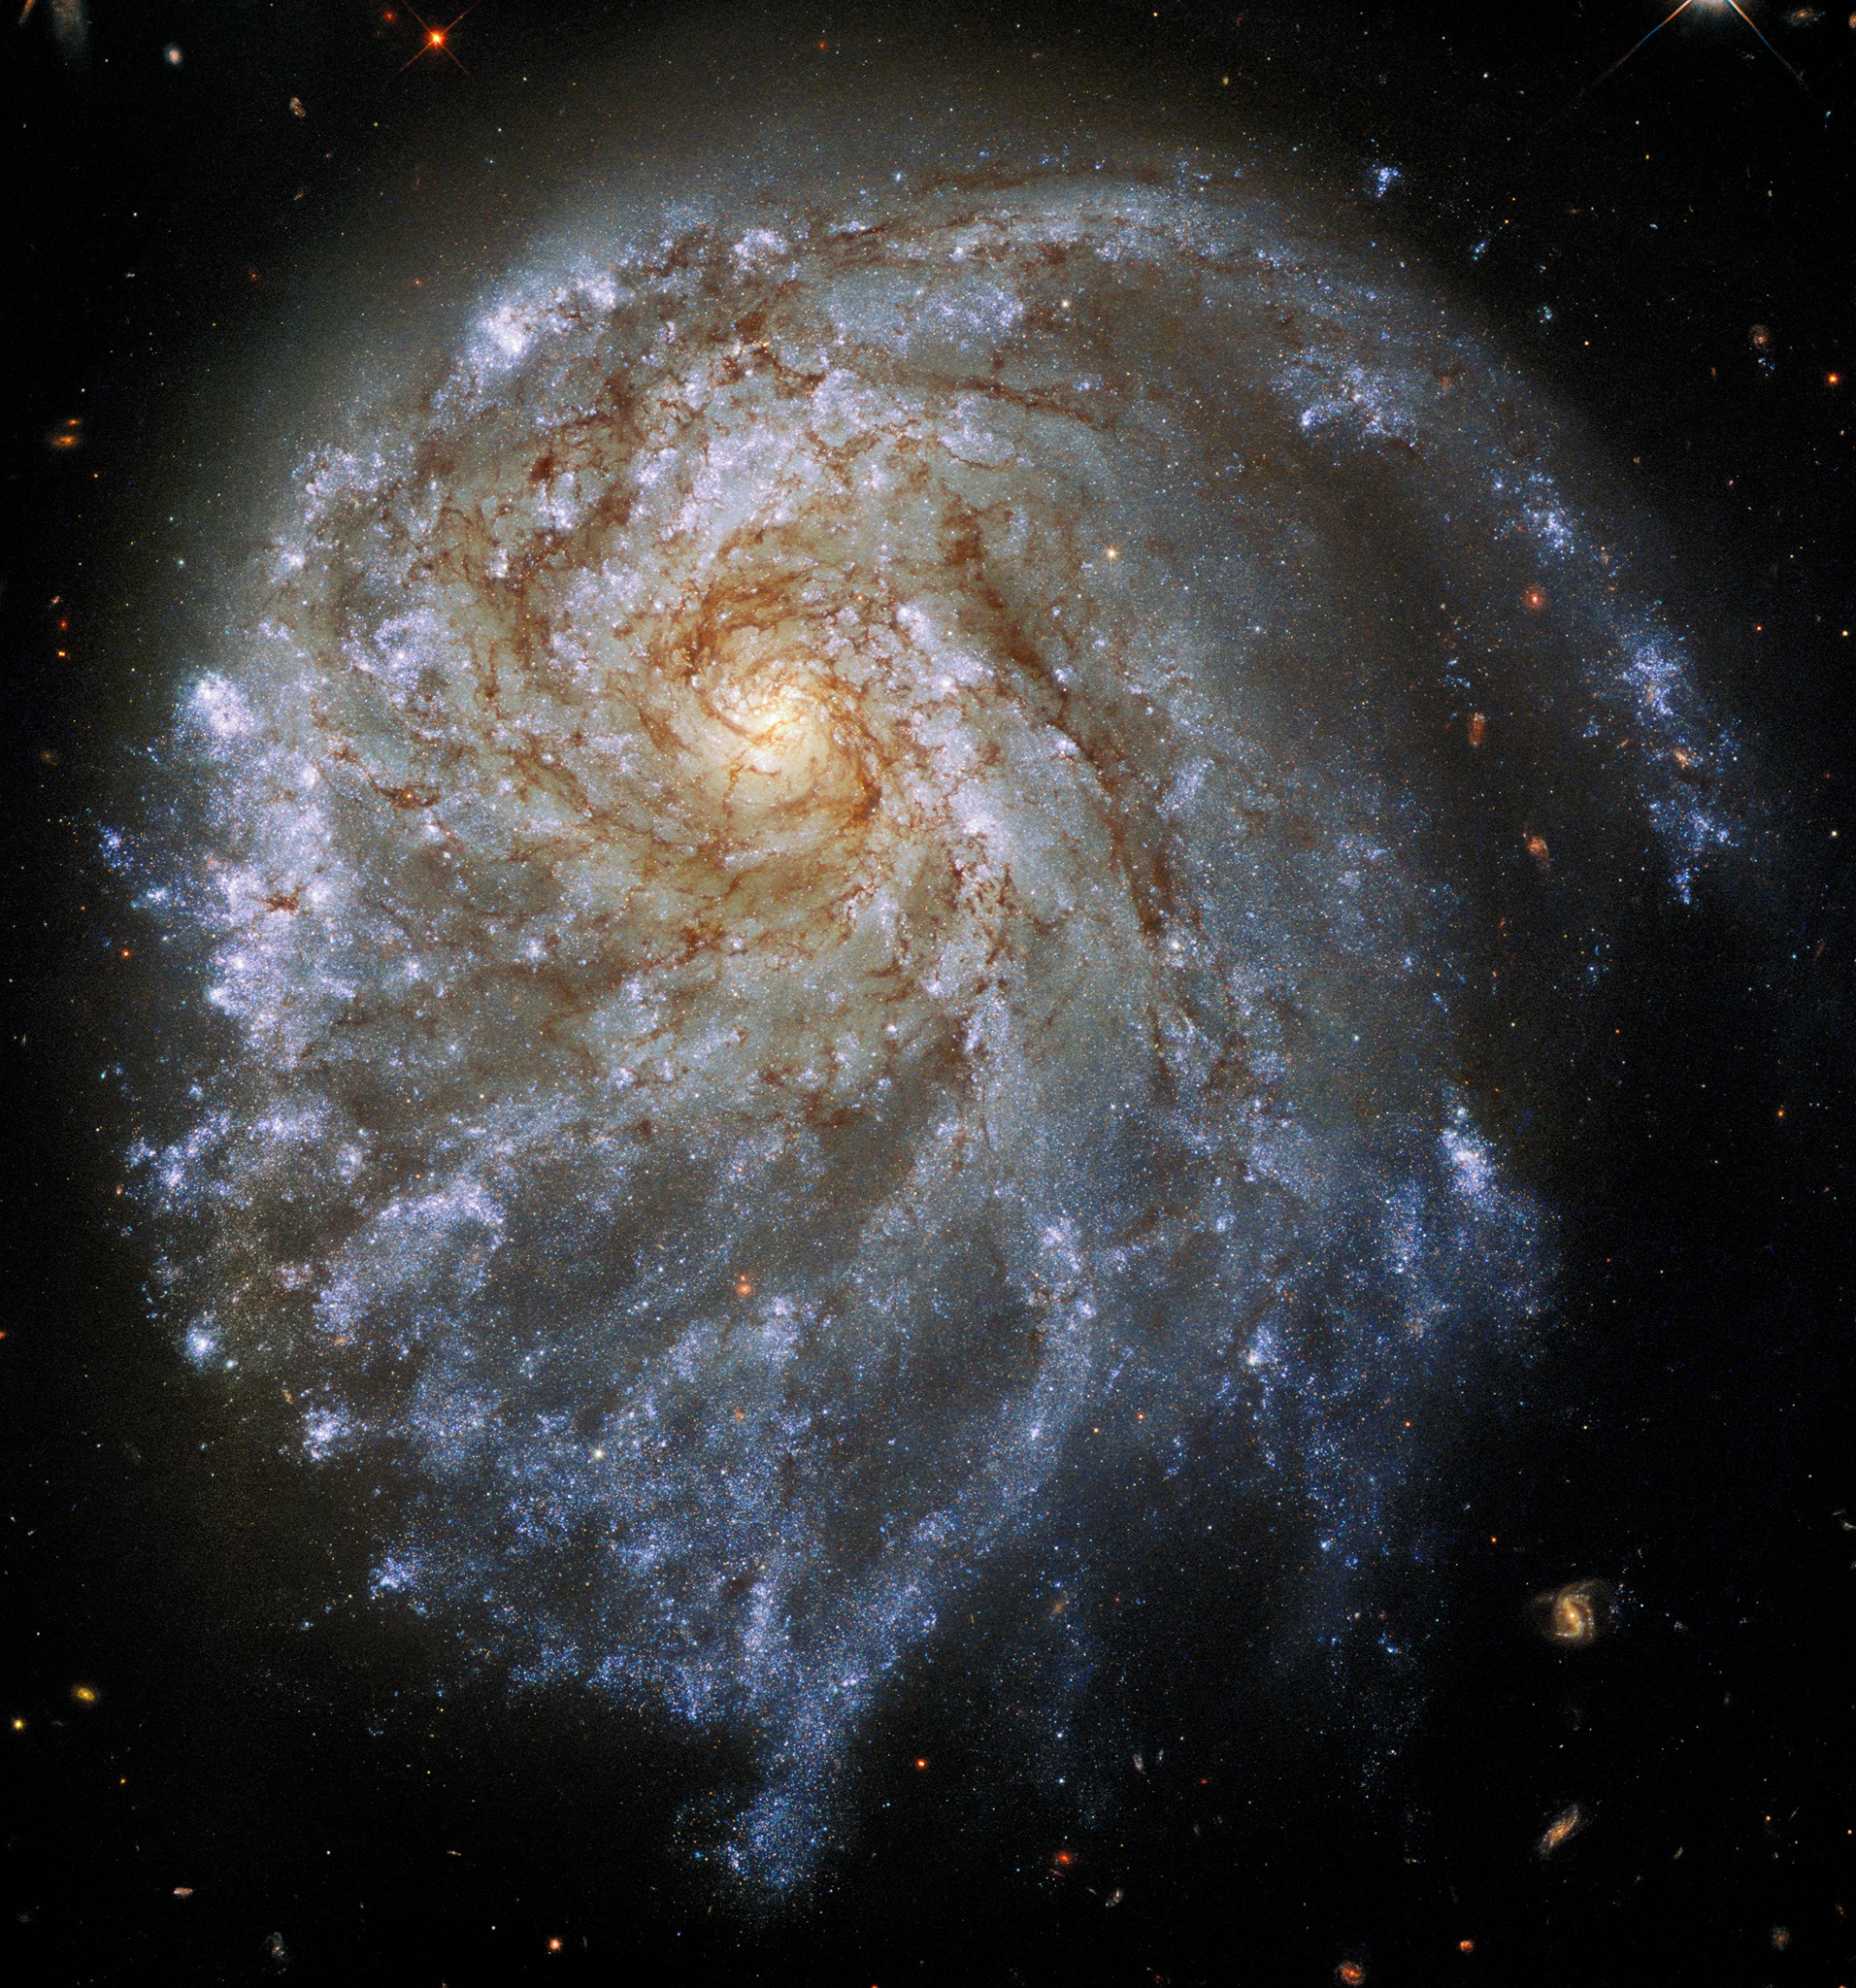 Thiên hà xoắn ốc tuyệt đẹp NGC 2276 trông hơi... méo trong ảnh chụp nhanh của Kính viễn vọng Không gian Hubble.